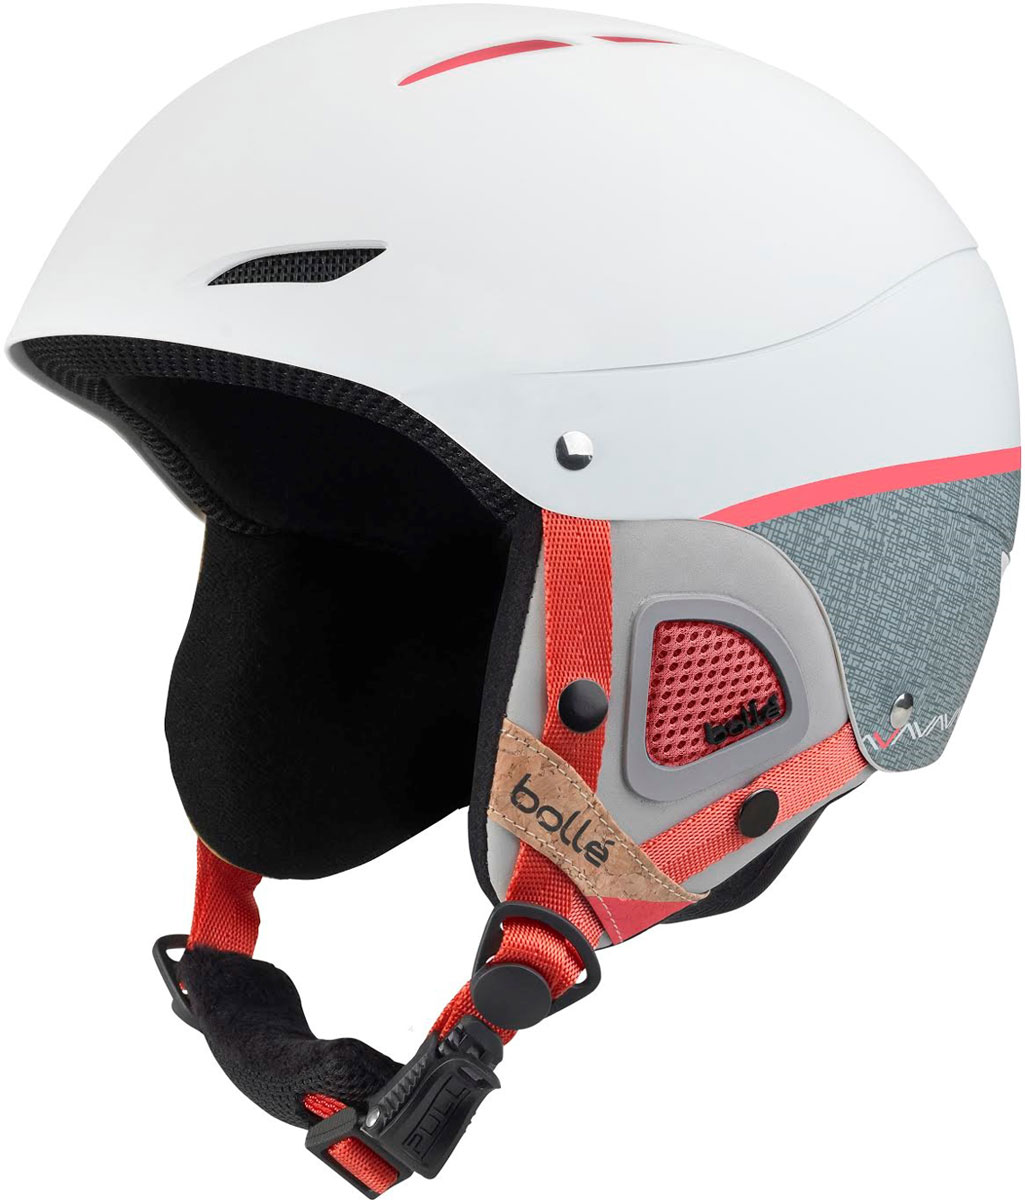 Women’s ski helmet